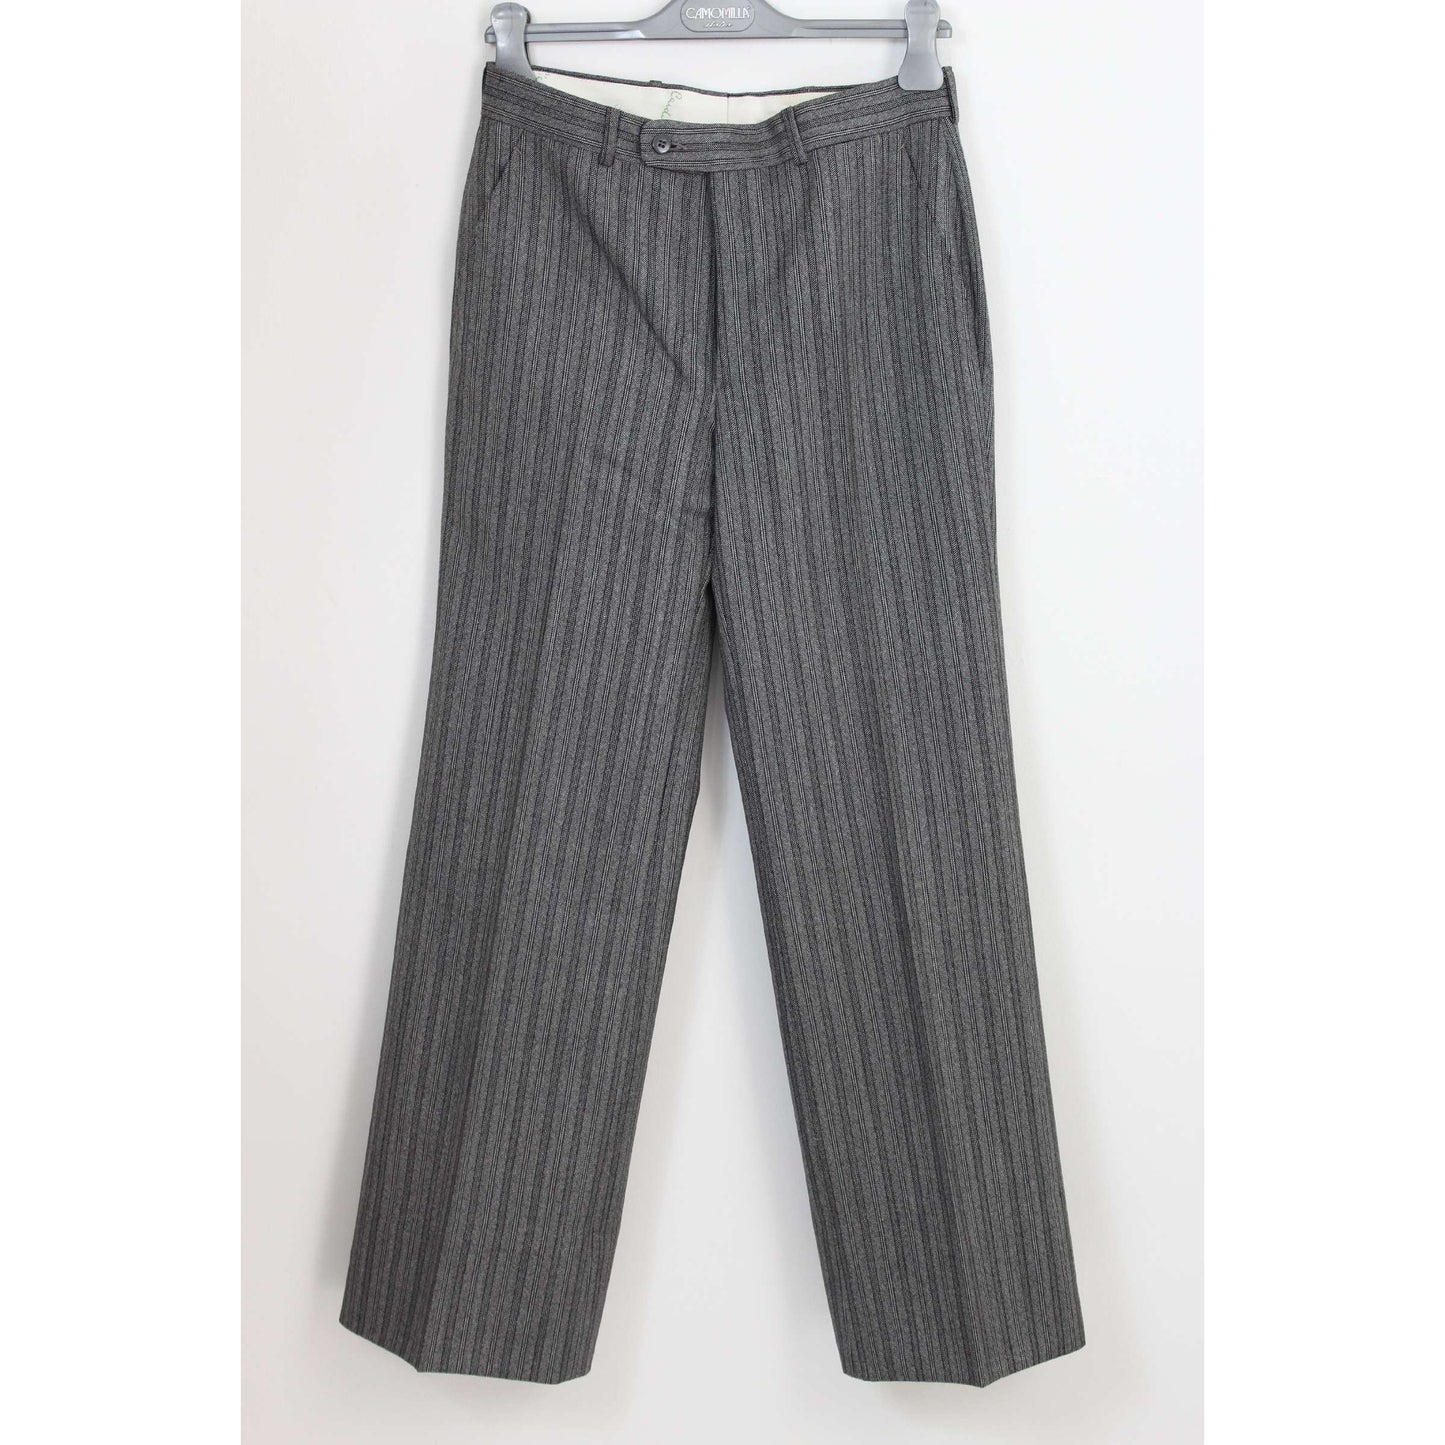 Pierre Cardin Vintage Wool Gray Smoking Pants Suit